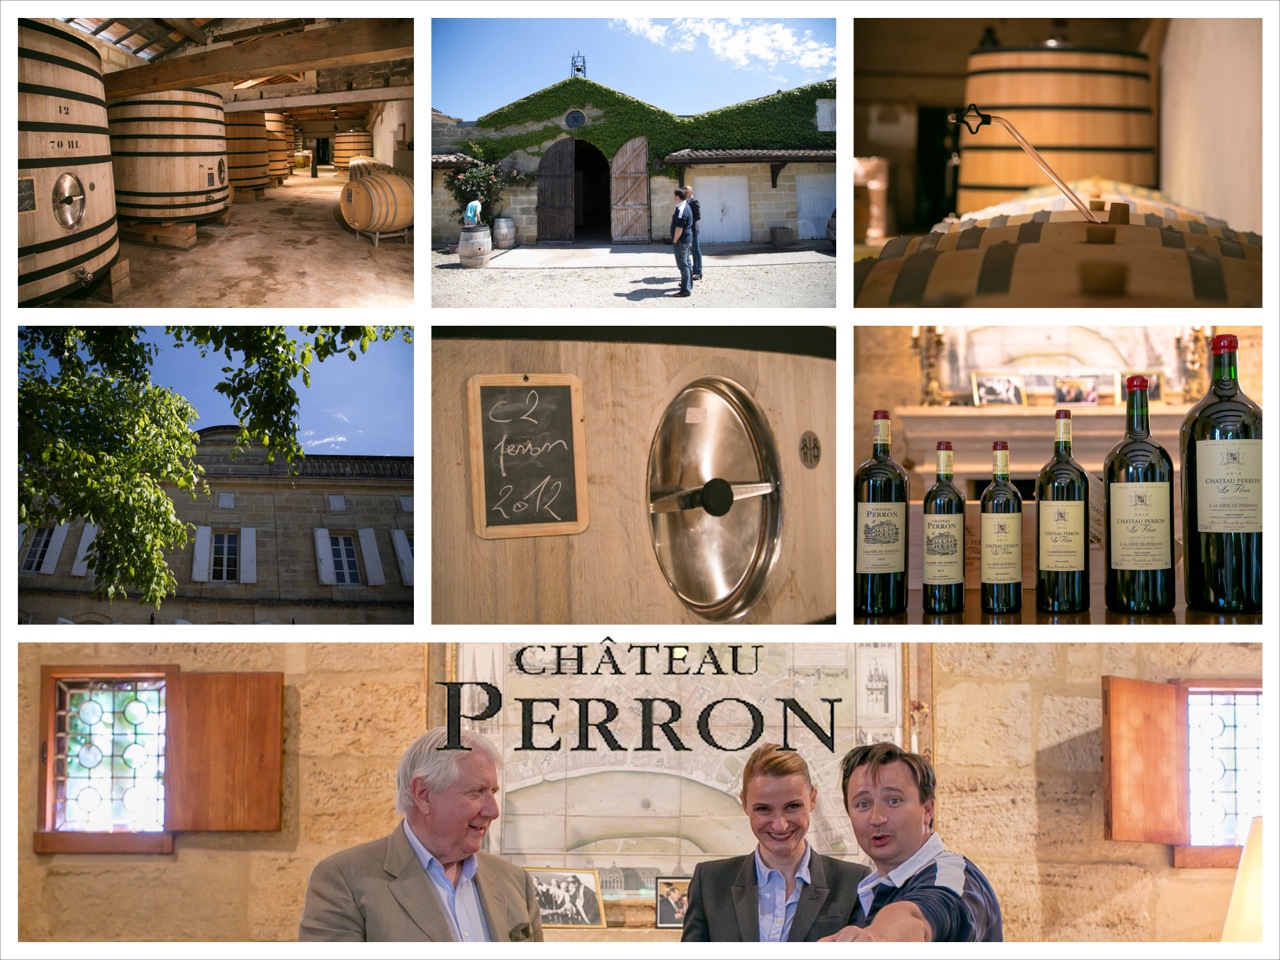 Château Perron AOC Lalande de Pomerol Red 2019